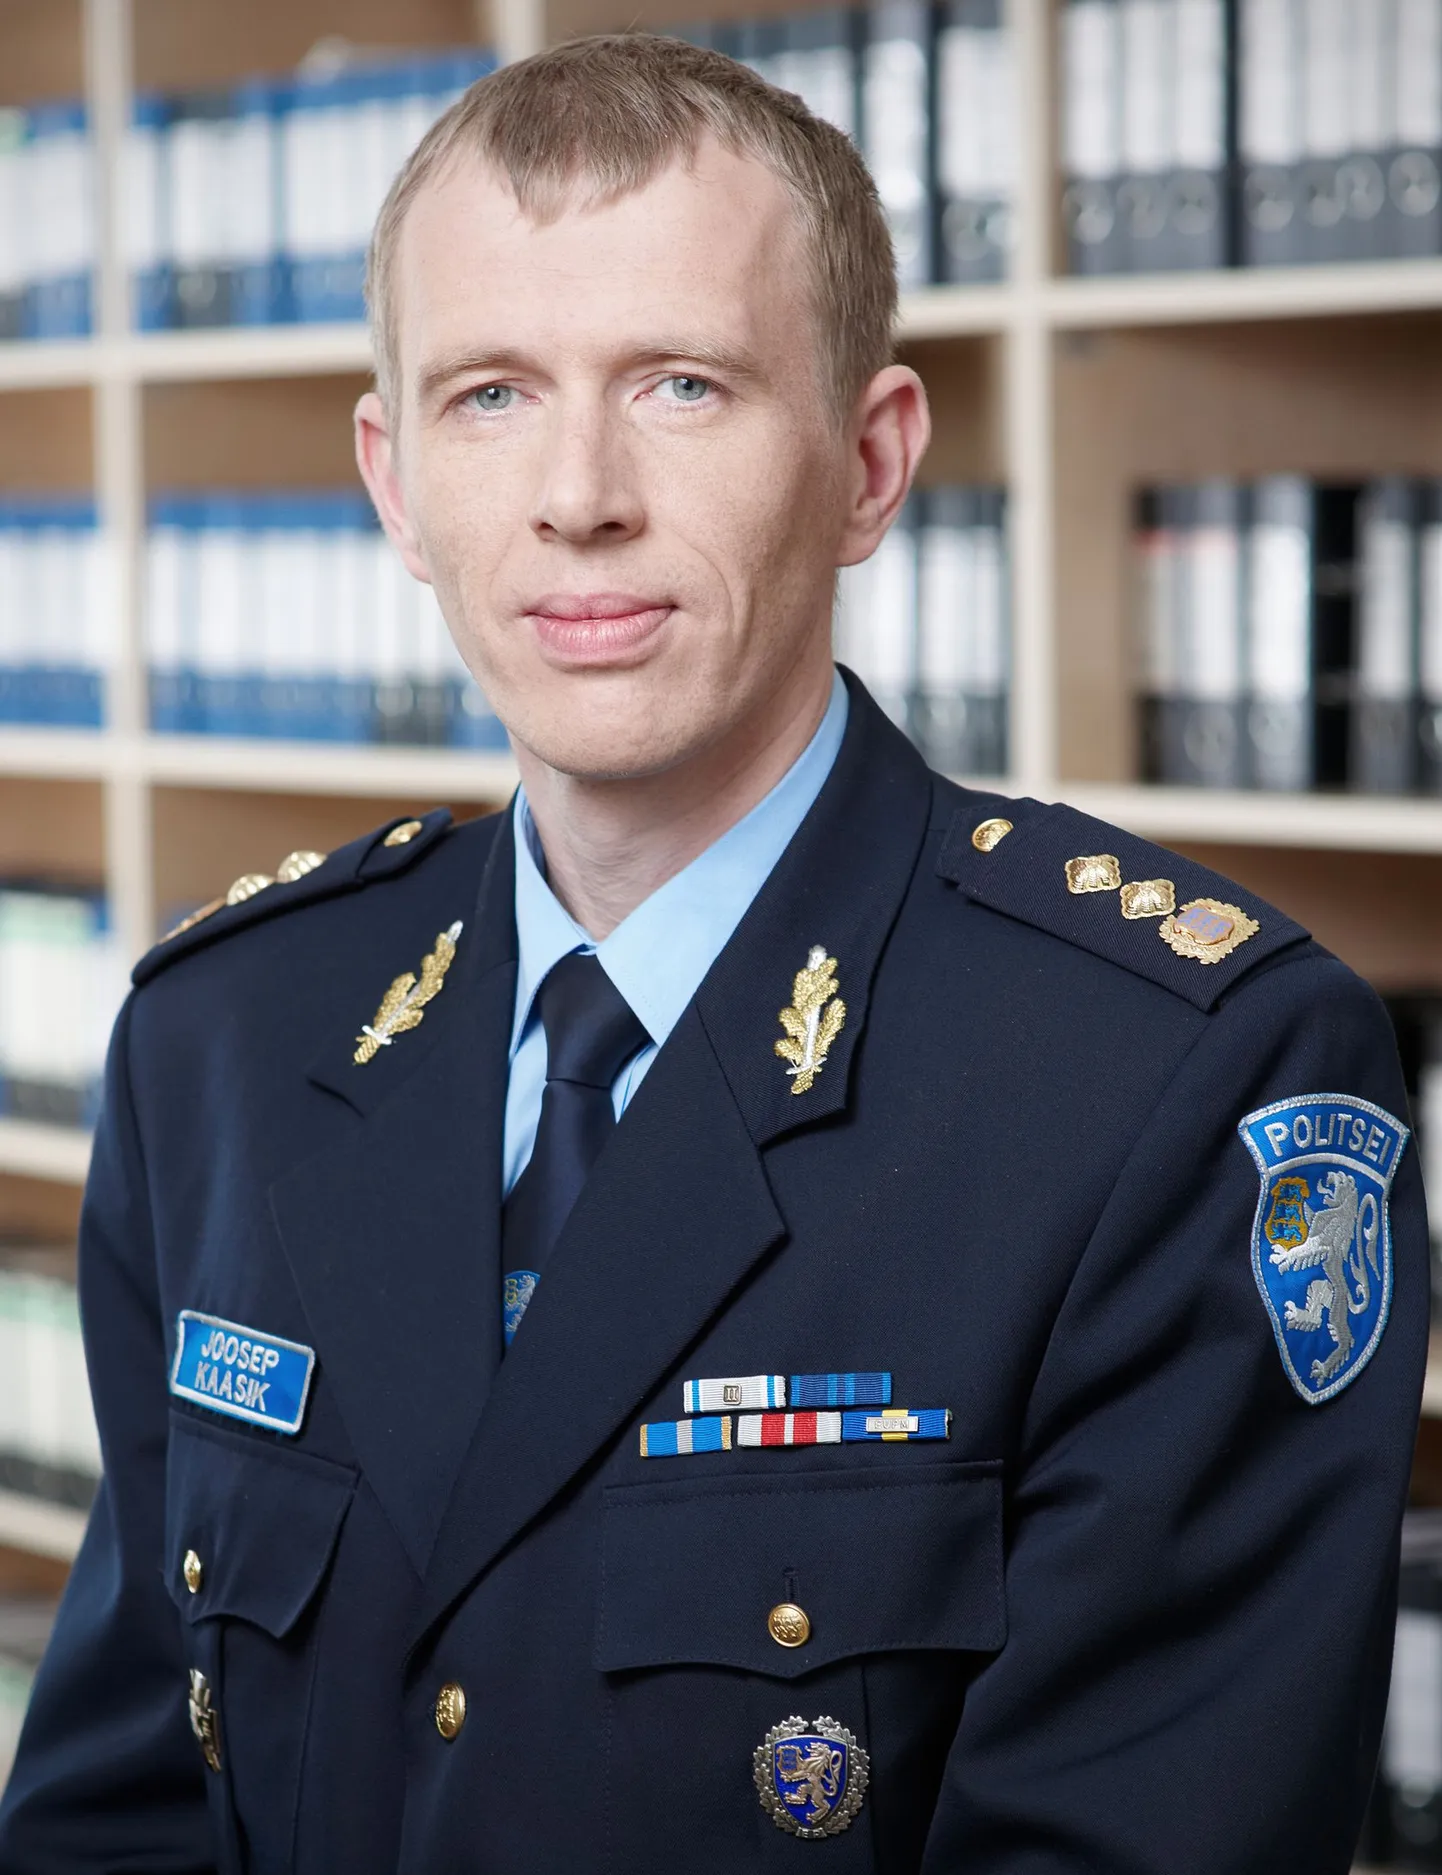 Politsei- ja piirivalveameti korrakaitsepolitseiosakonna politsei kolonelleitnant Joosep Kaasik.